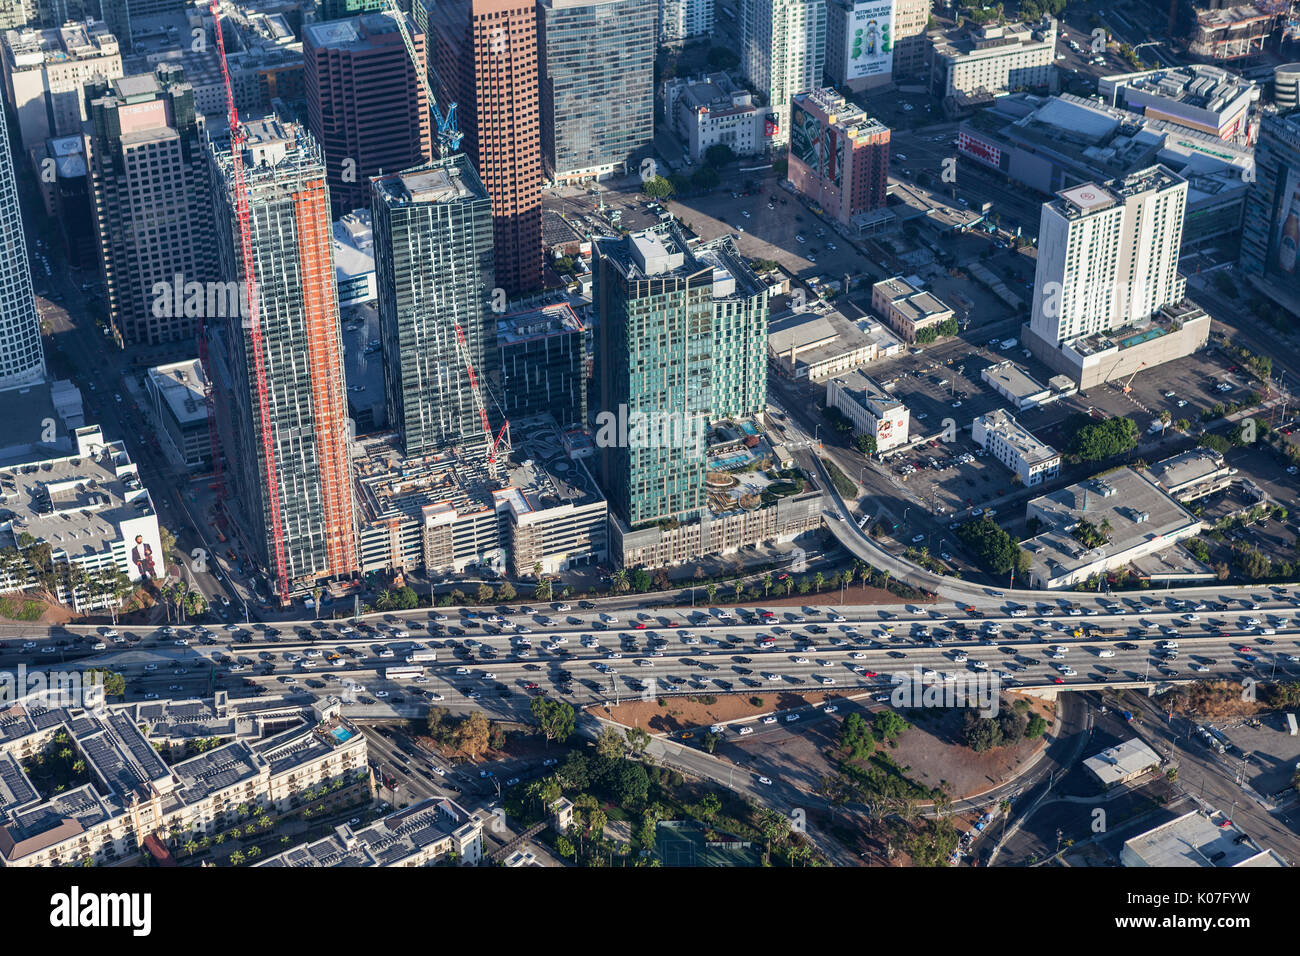 Los Angeles, Californie, USA - 7 août 2017 : Vue aérienne de nouvelle construction haute tour le long de la freeway 110 Port coincé dans le centre-ville de LA. Banque D'Images